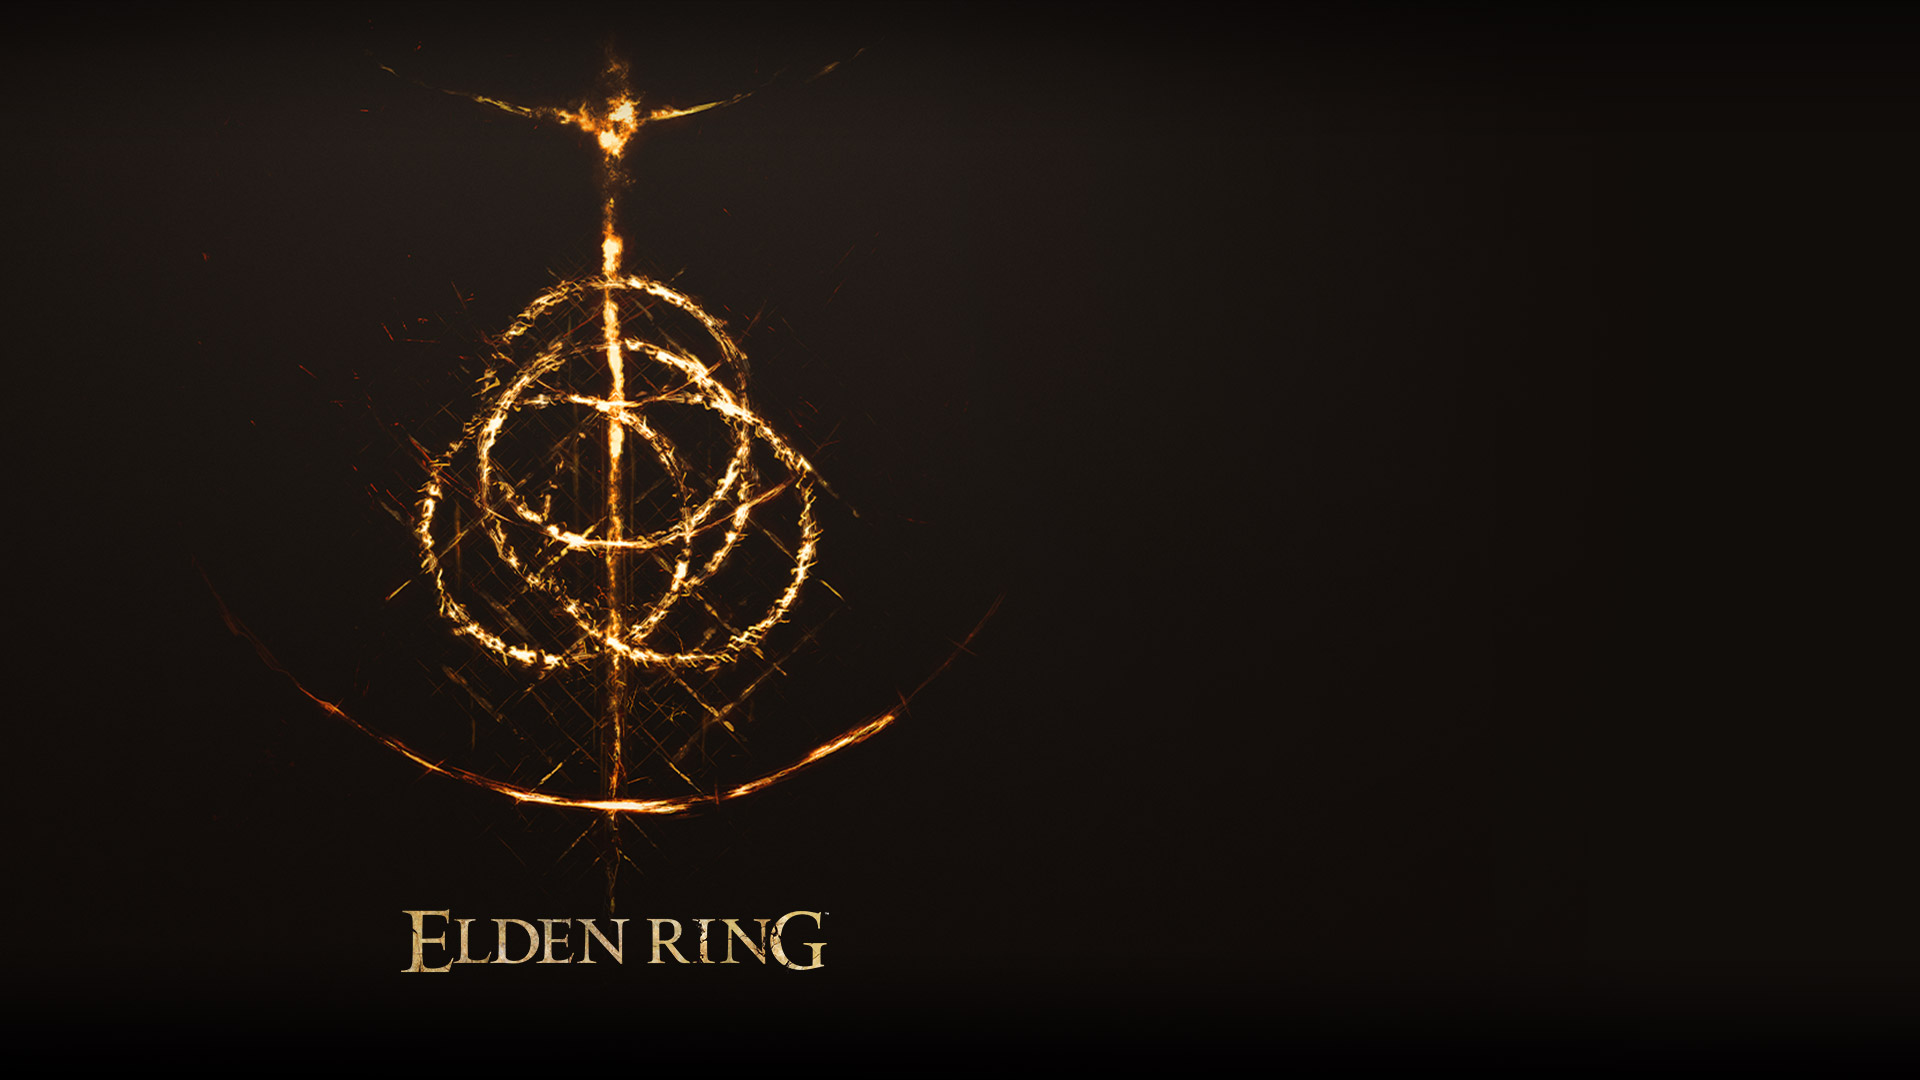 Elden Ring Phone Wallpaper : Wallpaper Elden Ring E3 2019 Screenshot 4k